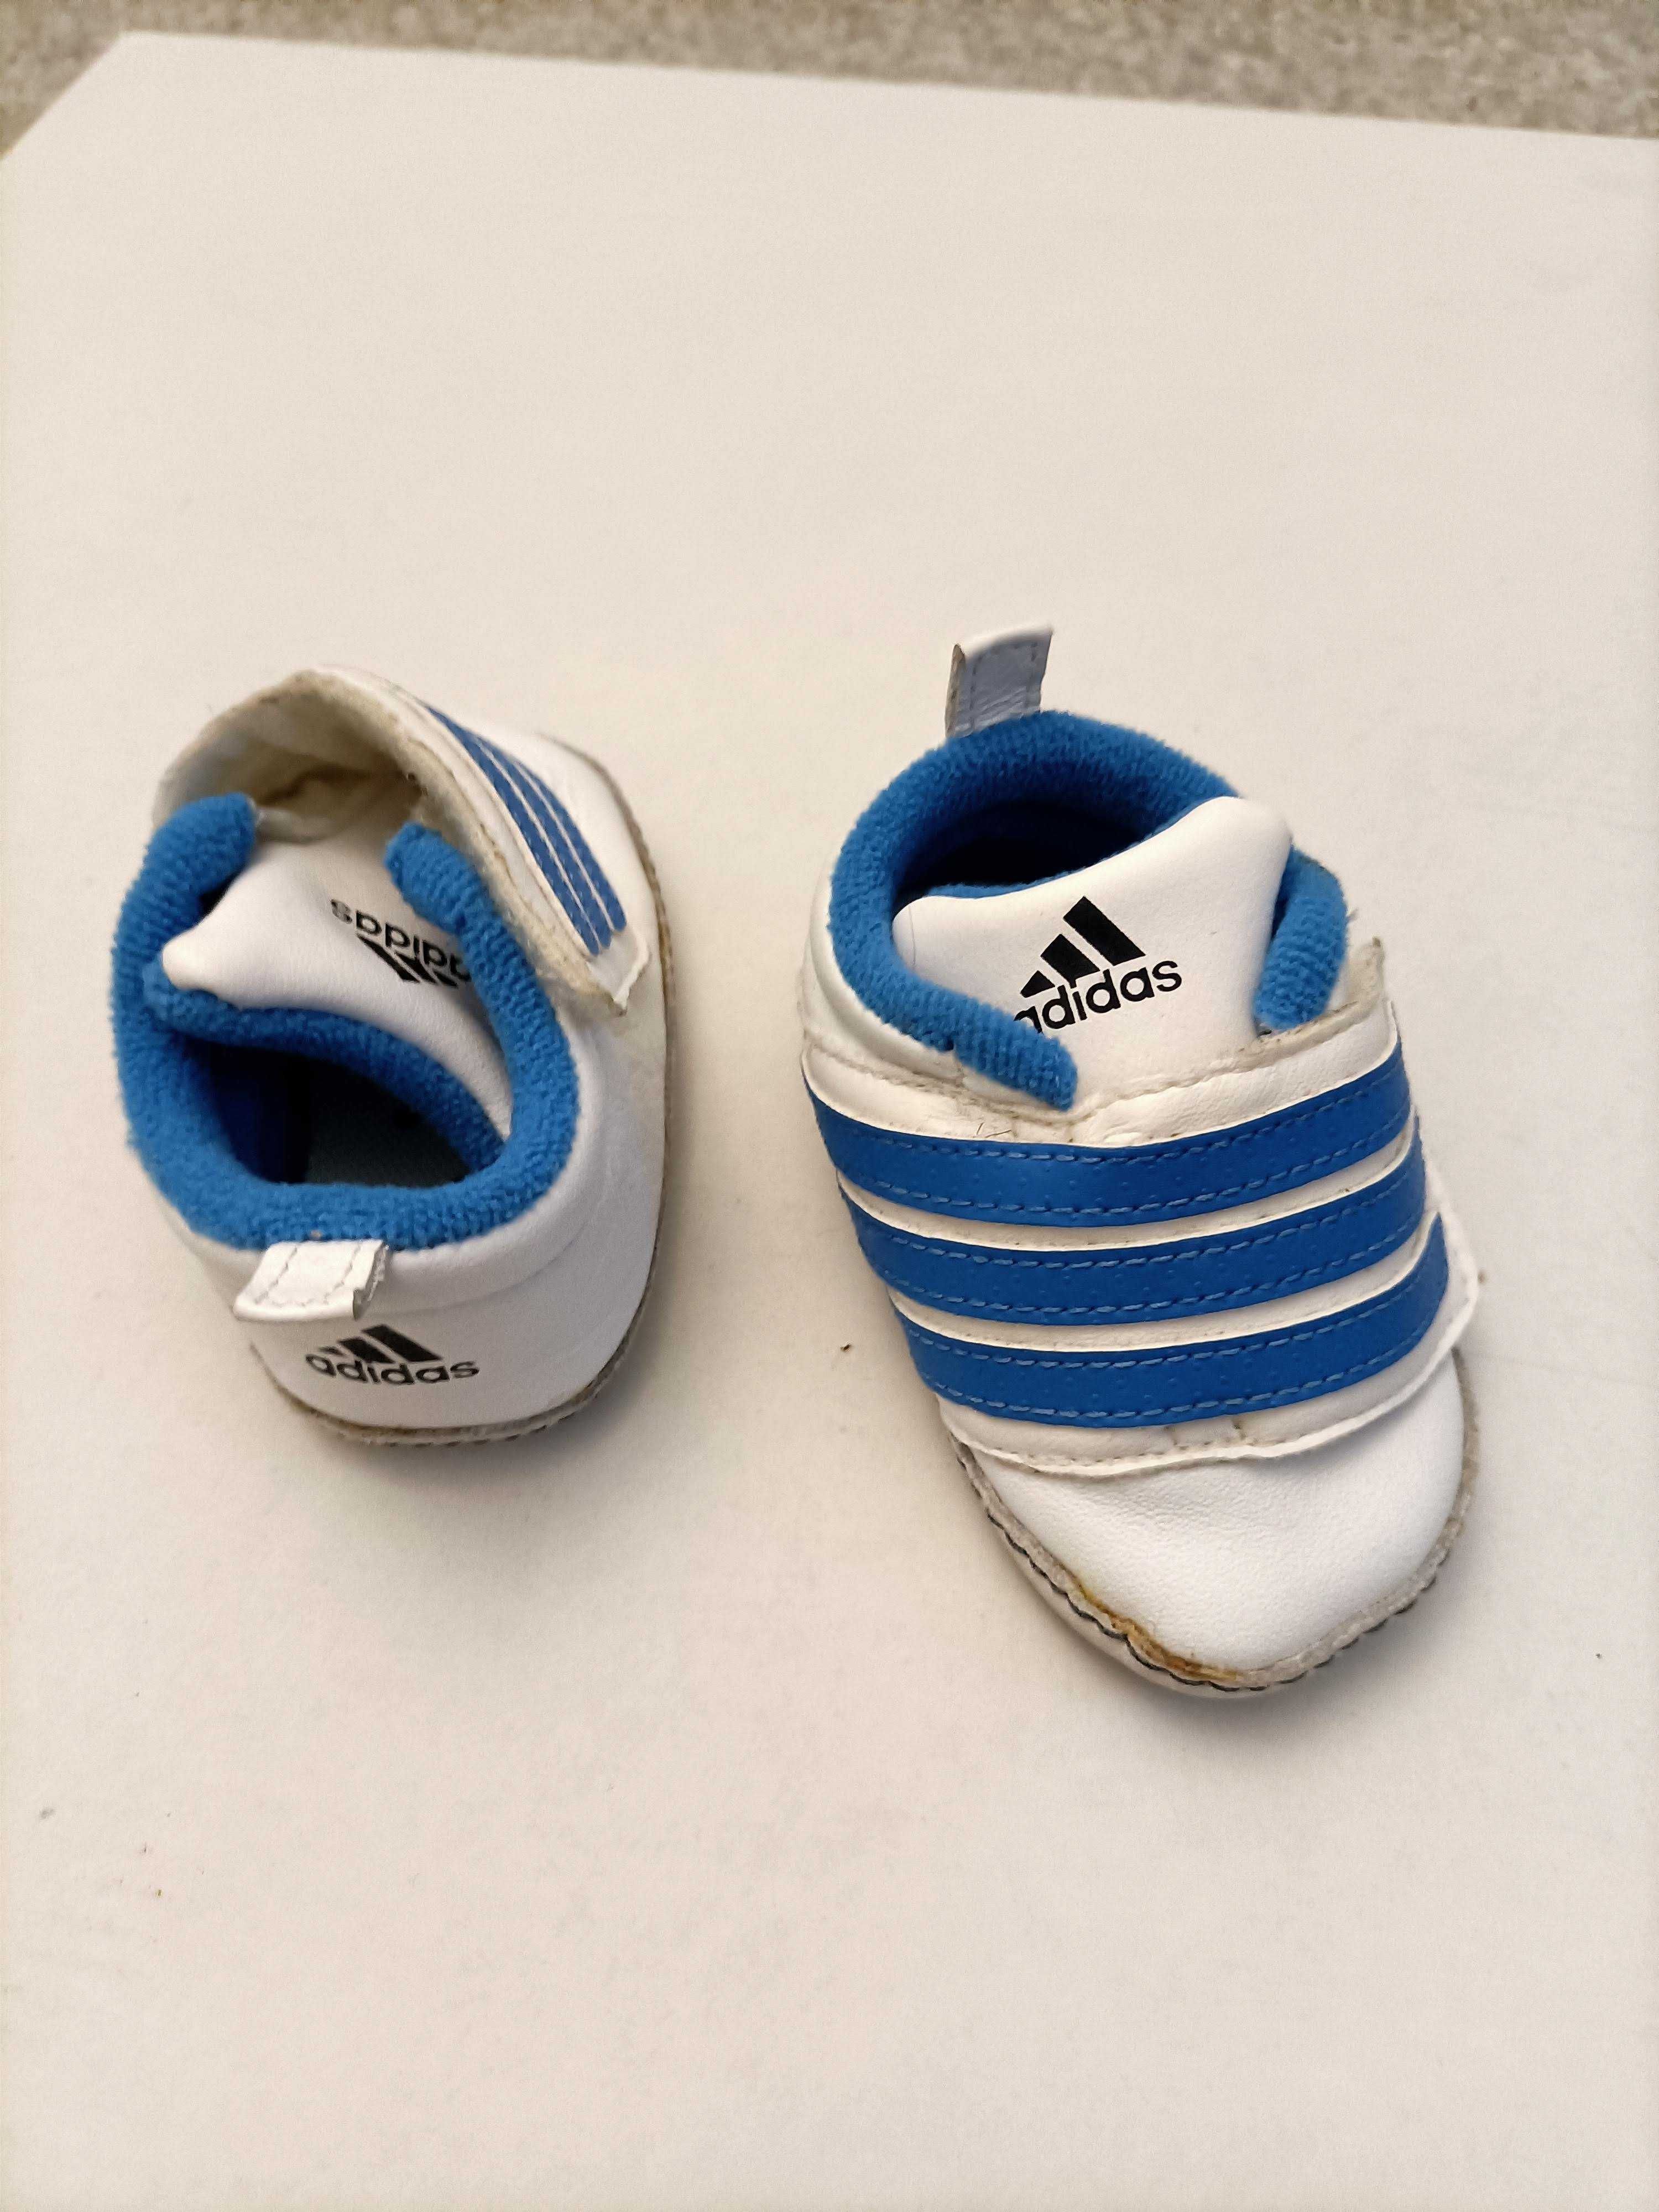 Buty dla maluszka firmy Adidas